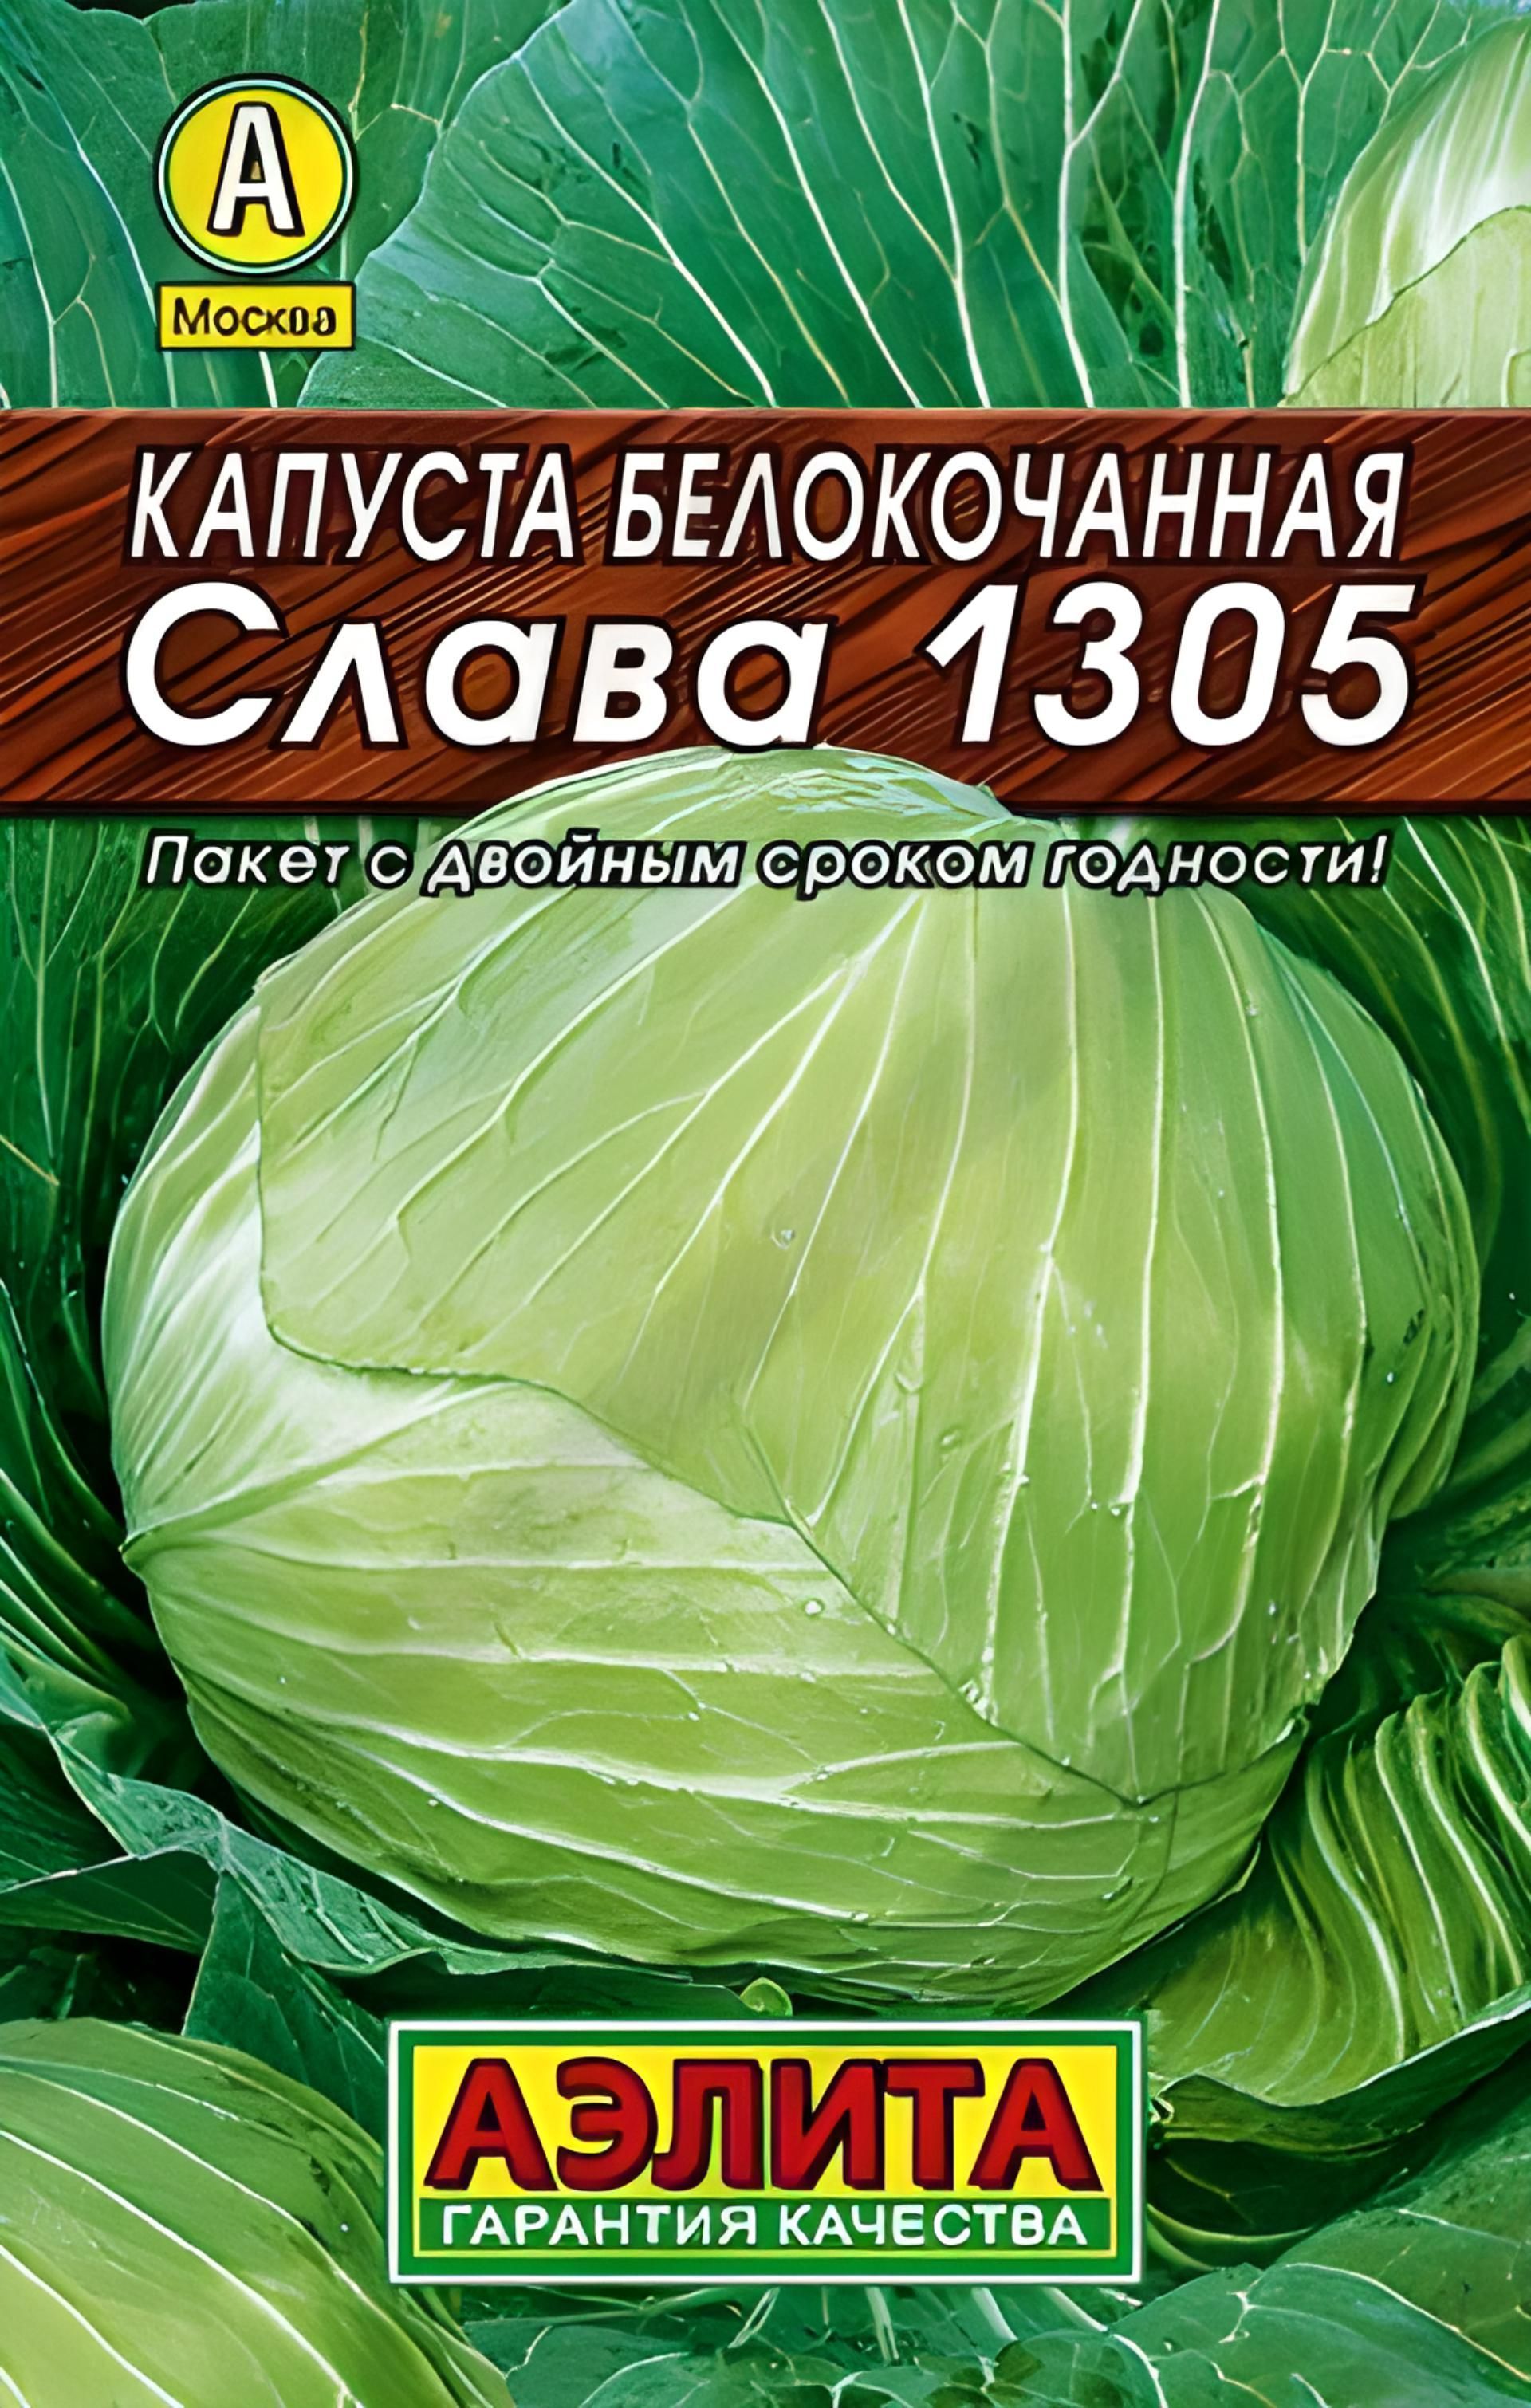 Капуста слава 1305 описание. Семена капуста белокочанная Слава 1305 (Семетра) 0,5гр. Капуста Слава 1305 семена.